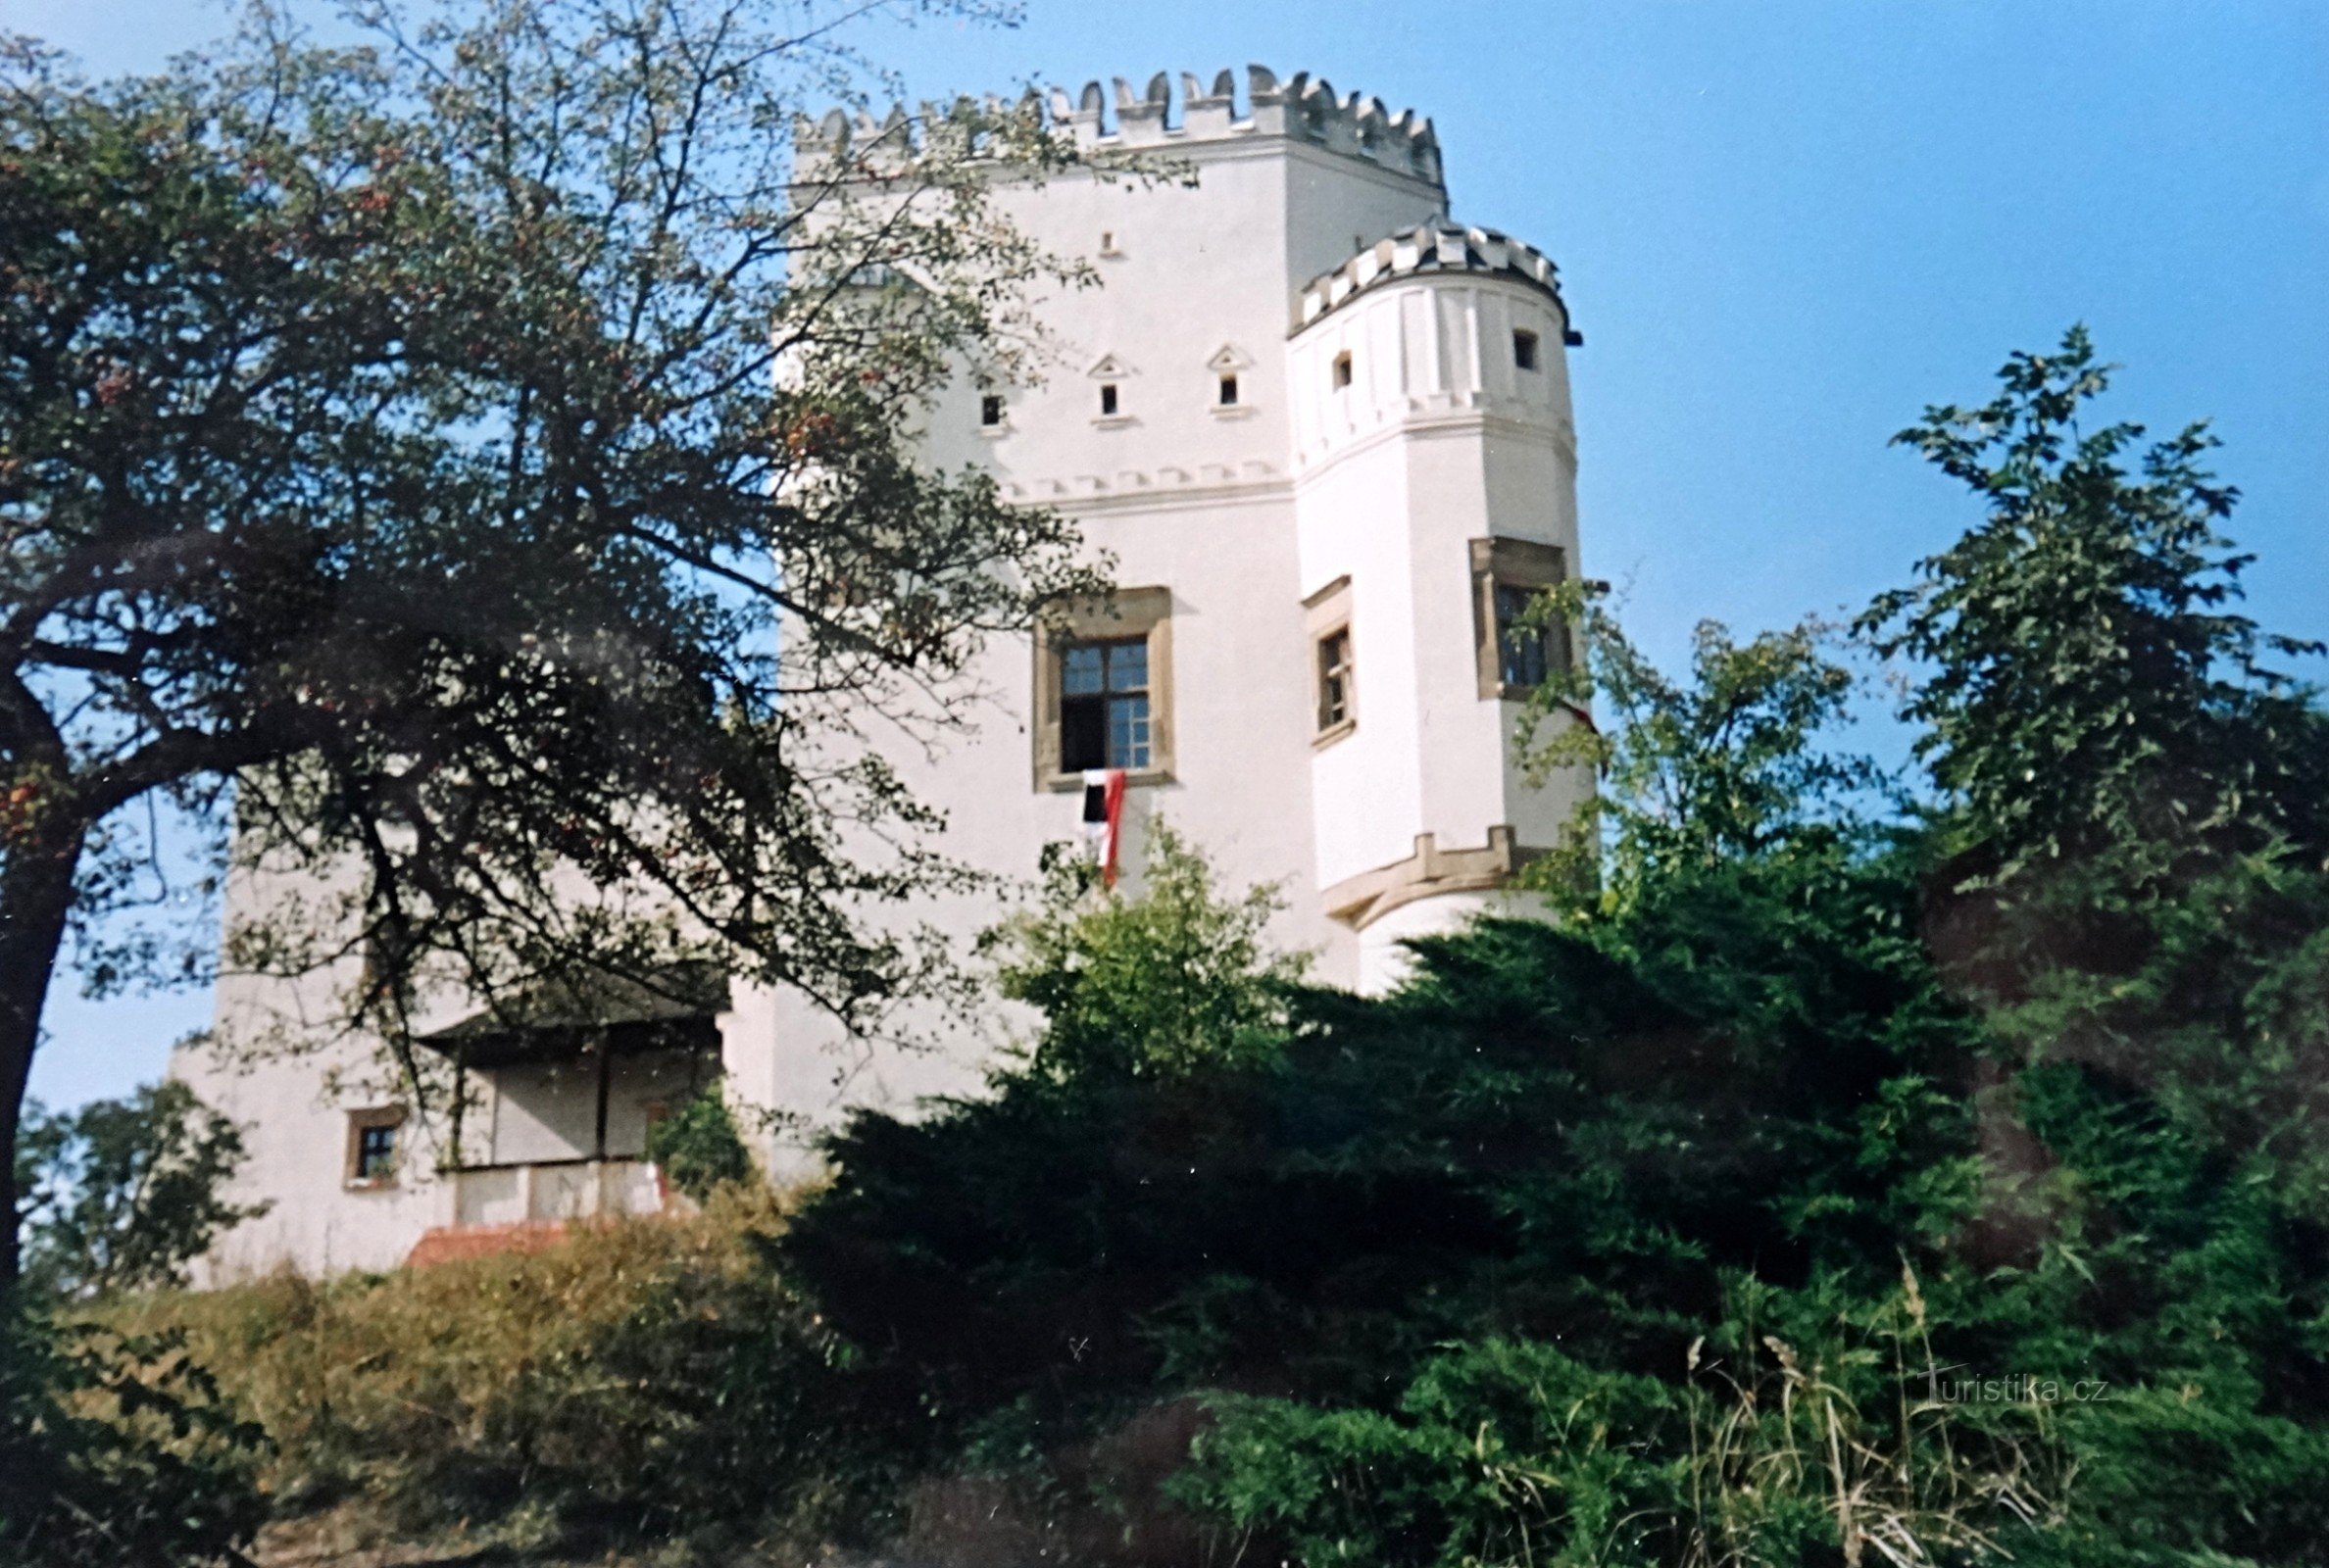 Новые замки возле замка Несовице